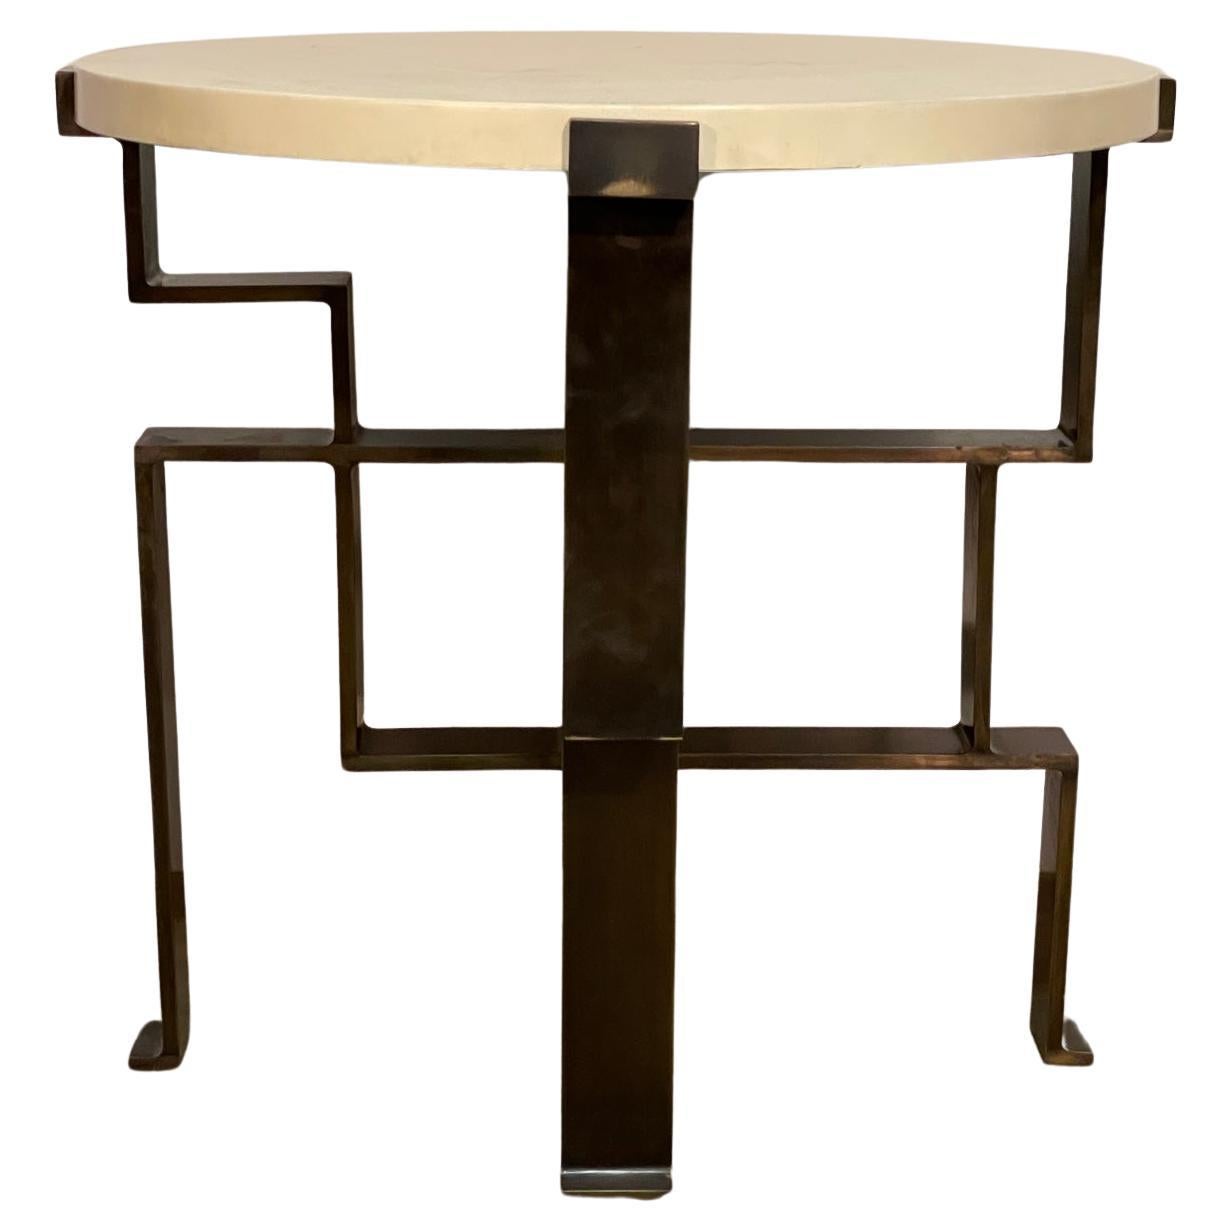 Jean de Merry "Soho" side table *solid bronze legs*